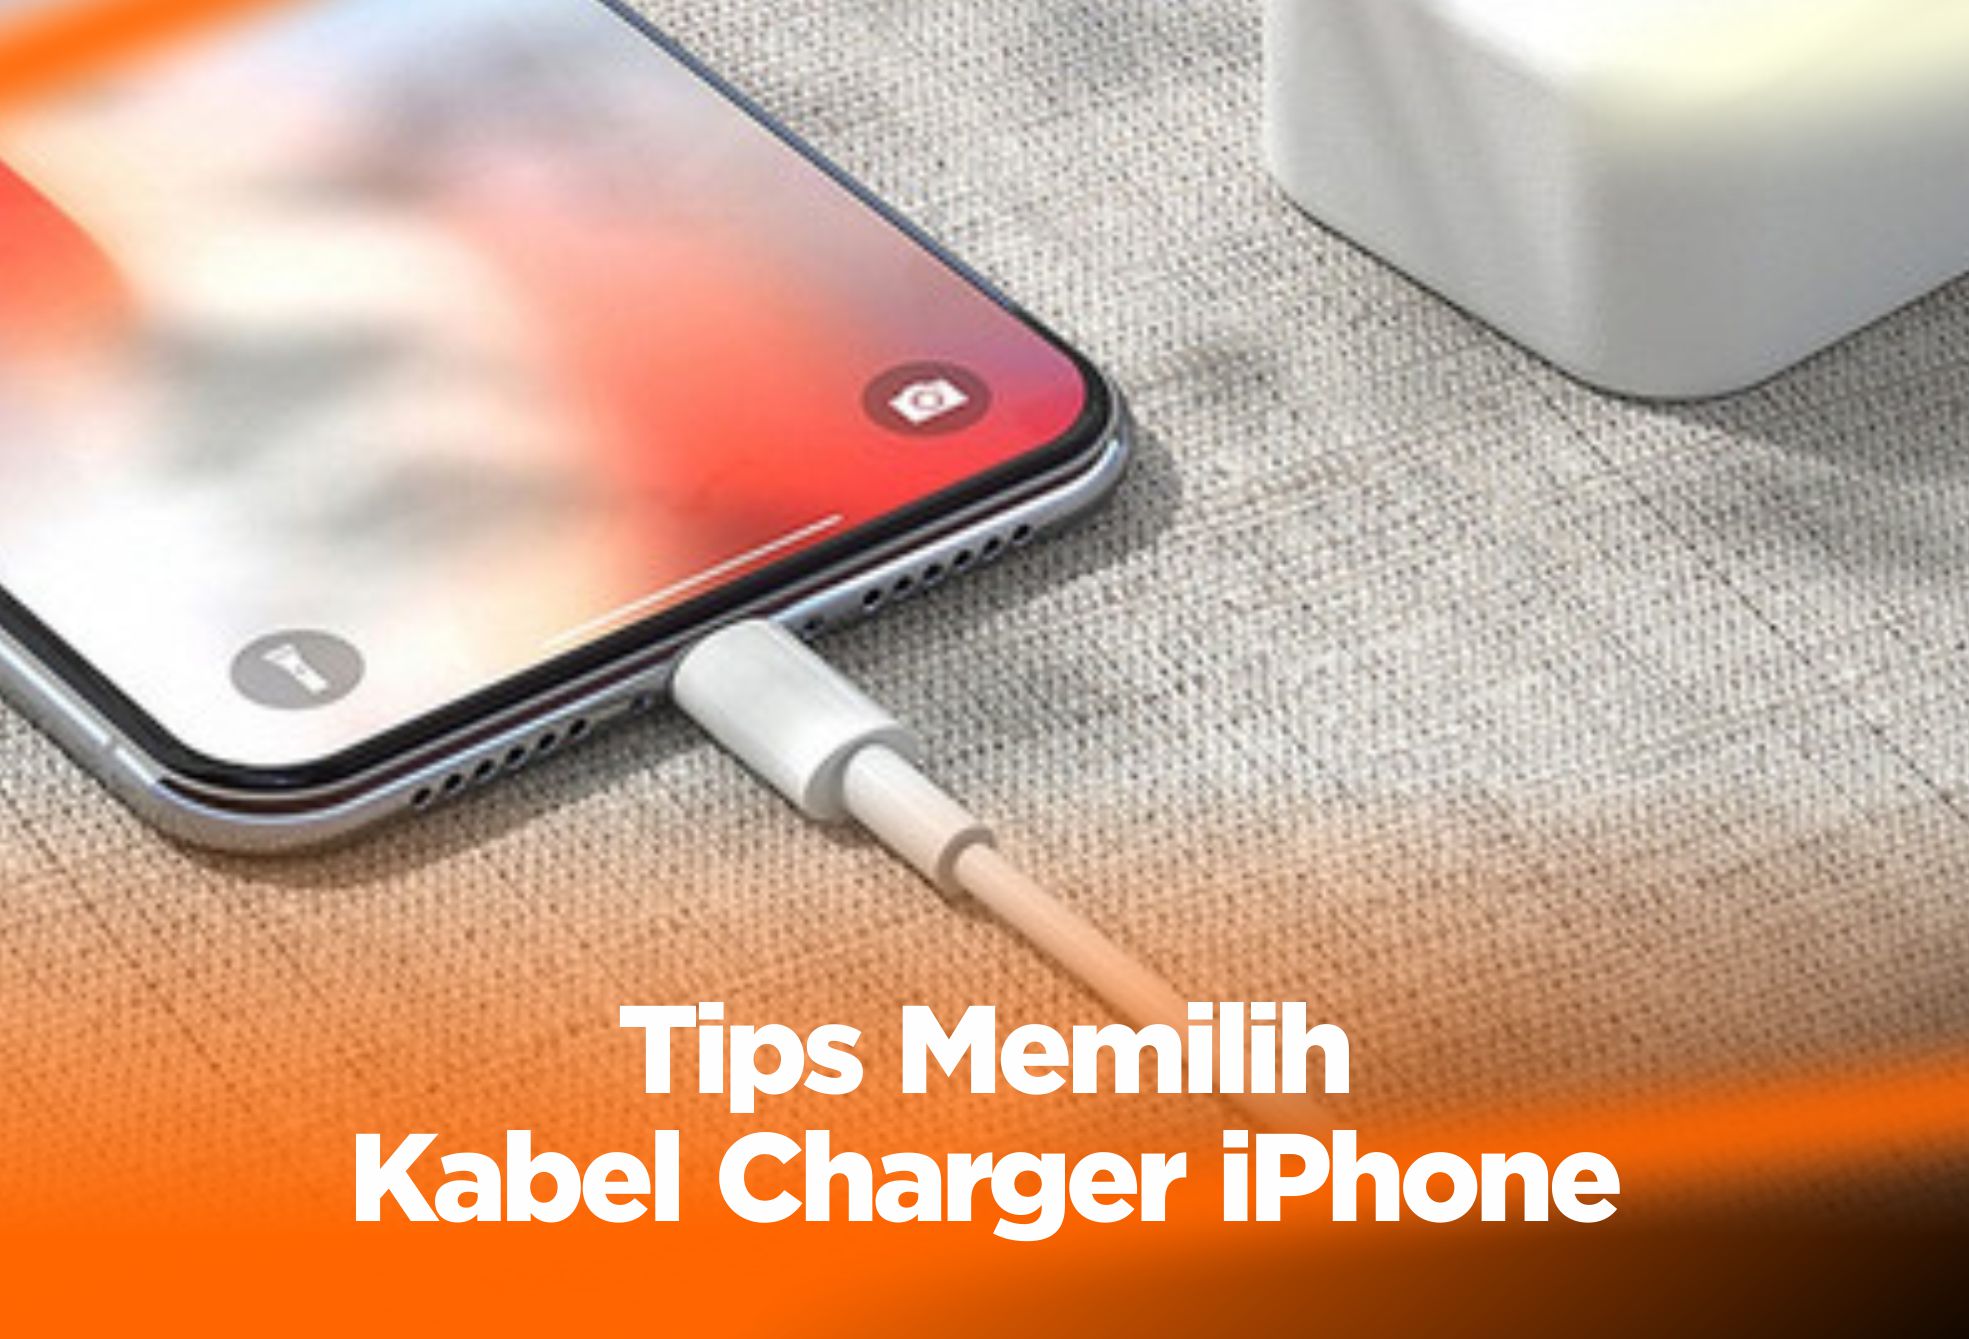 Tips Memilih Kabel Charger iPhone, Biar Awet !